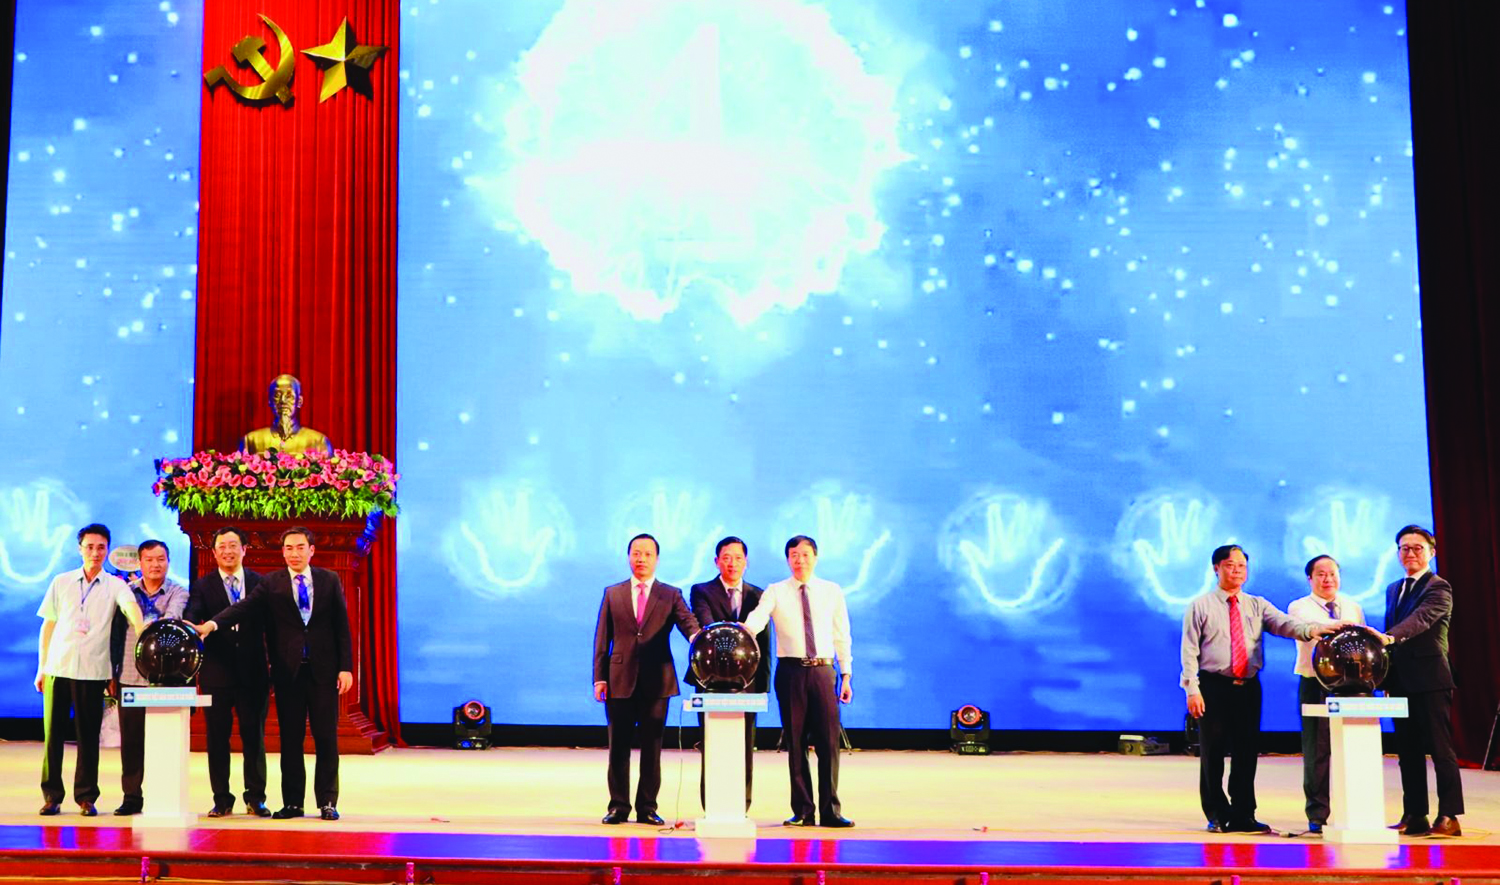  Các đồng chí lãnh đạo ấn nút khởi động Ngày hội khởi nghiệp đổi mới sáng tạo Việt Nam 2022 tại Lai Châu.